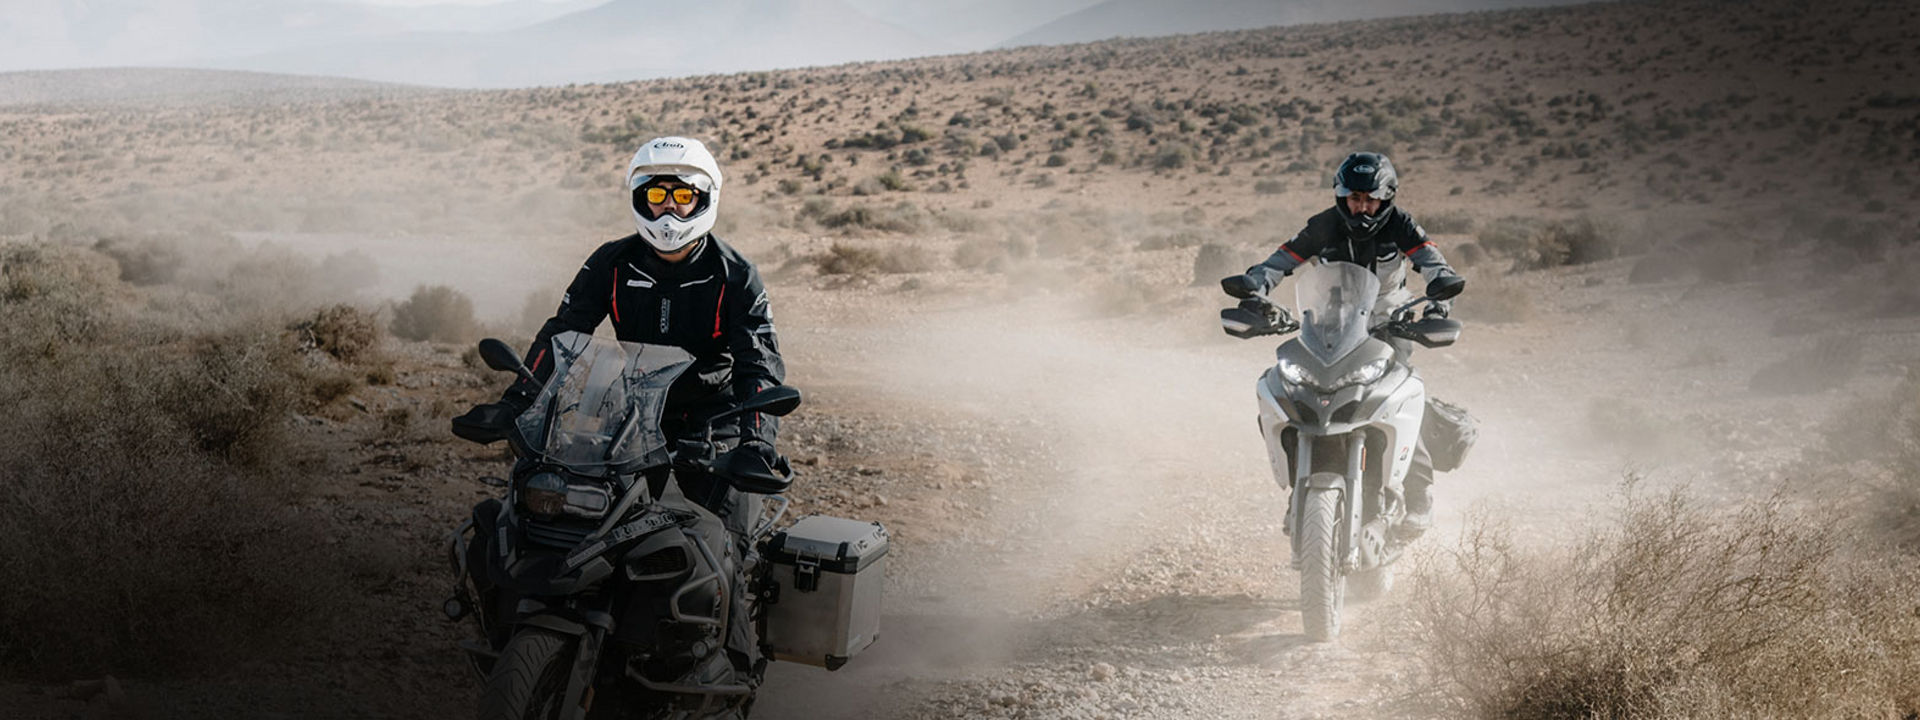 Cette image montre deux motards utilisant des pneus Trail Bridgestone pour explorer un désert à moto.